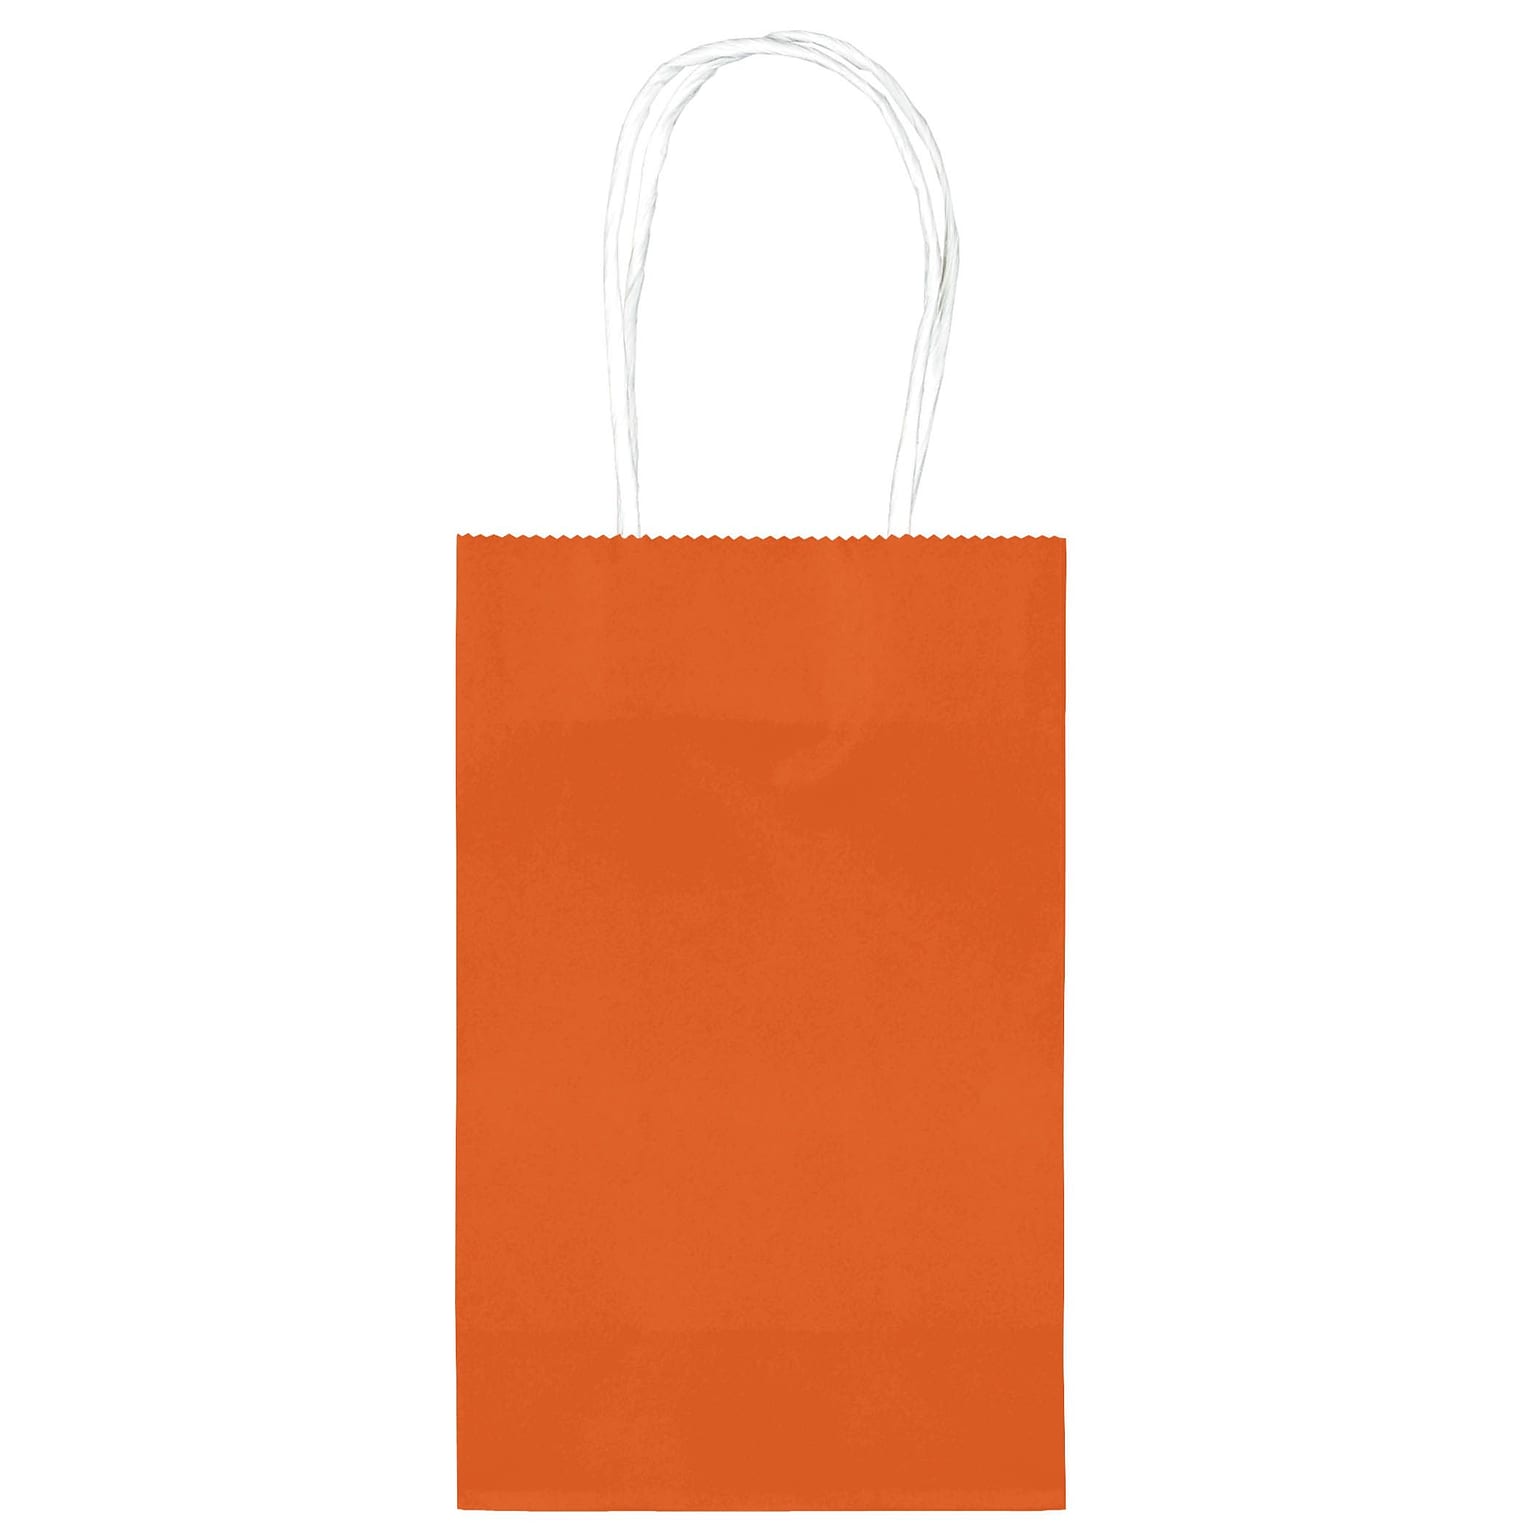 Amscan Cub Bags Value Pack, Orange Peel, 4/Pack (162500.05)